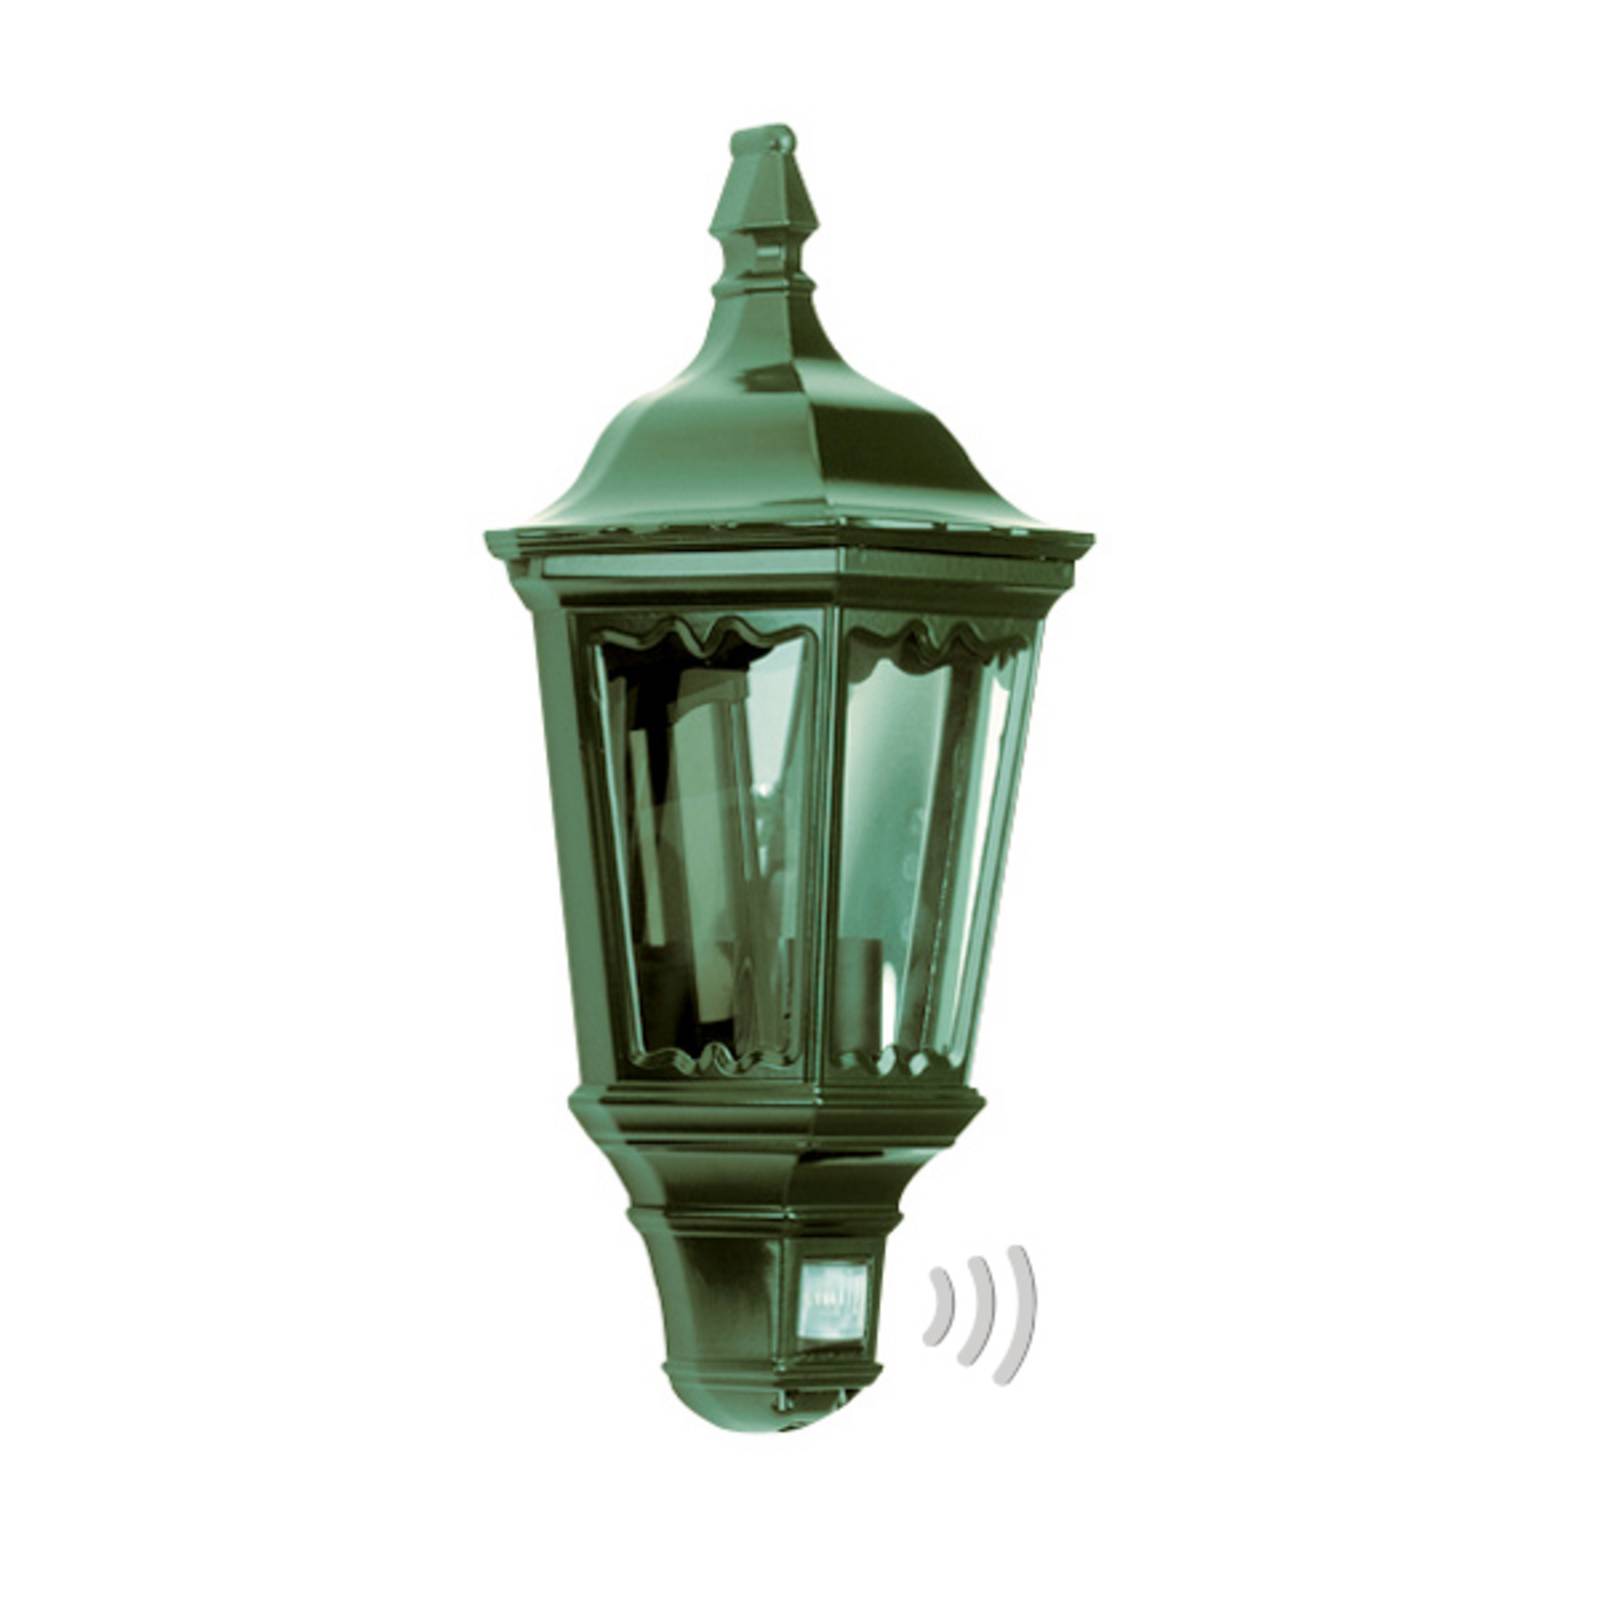 K.S. Verlichting Praktické venkovní nástěnné svítidlo Ancona, zelené